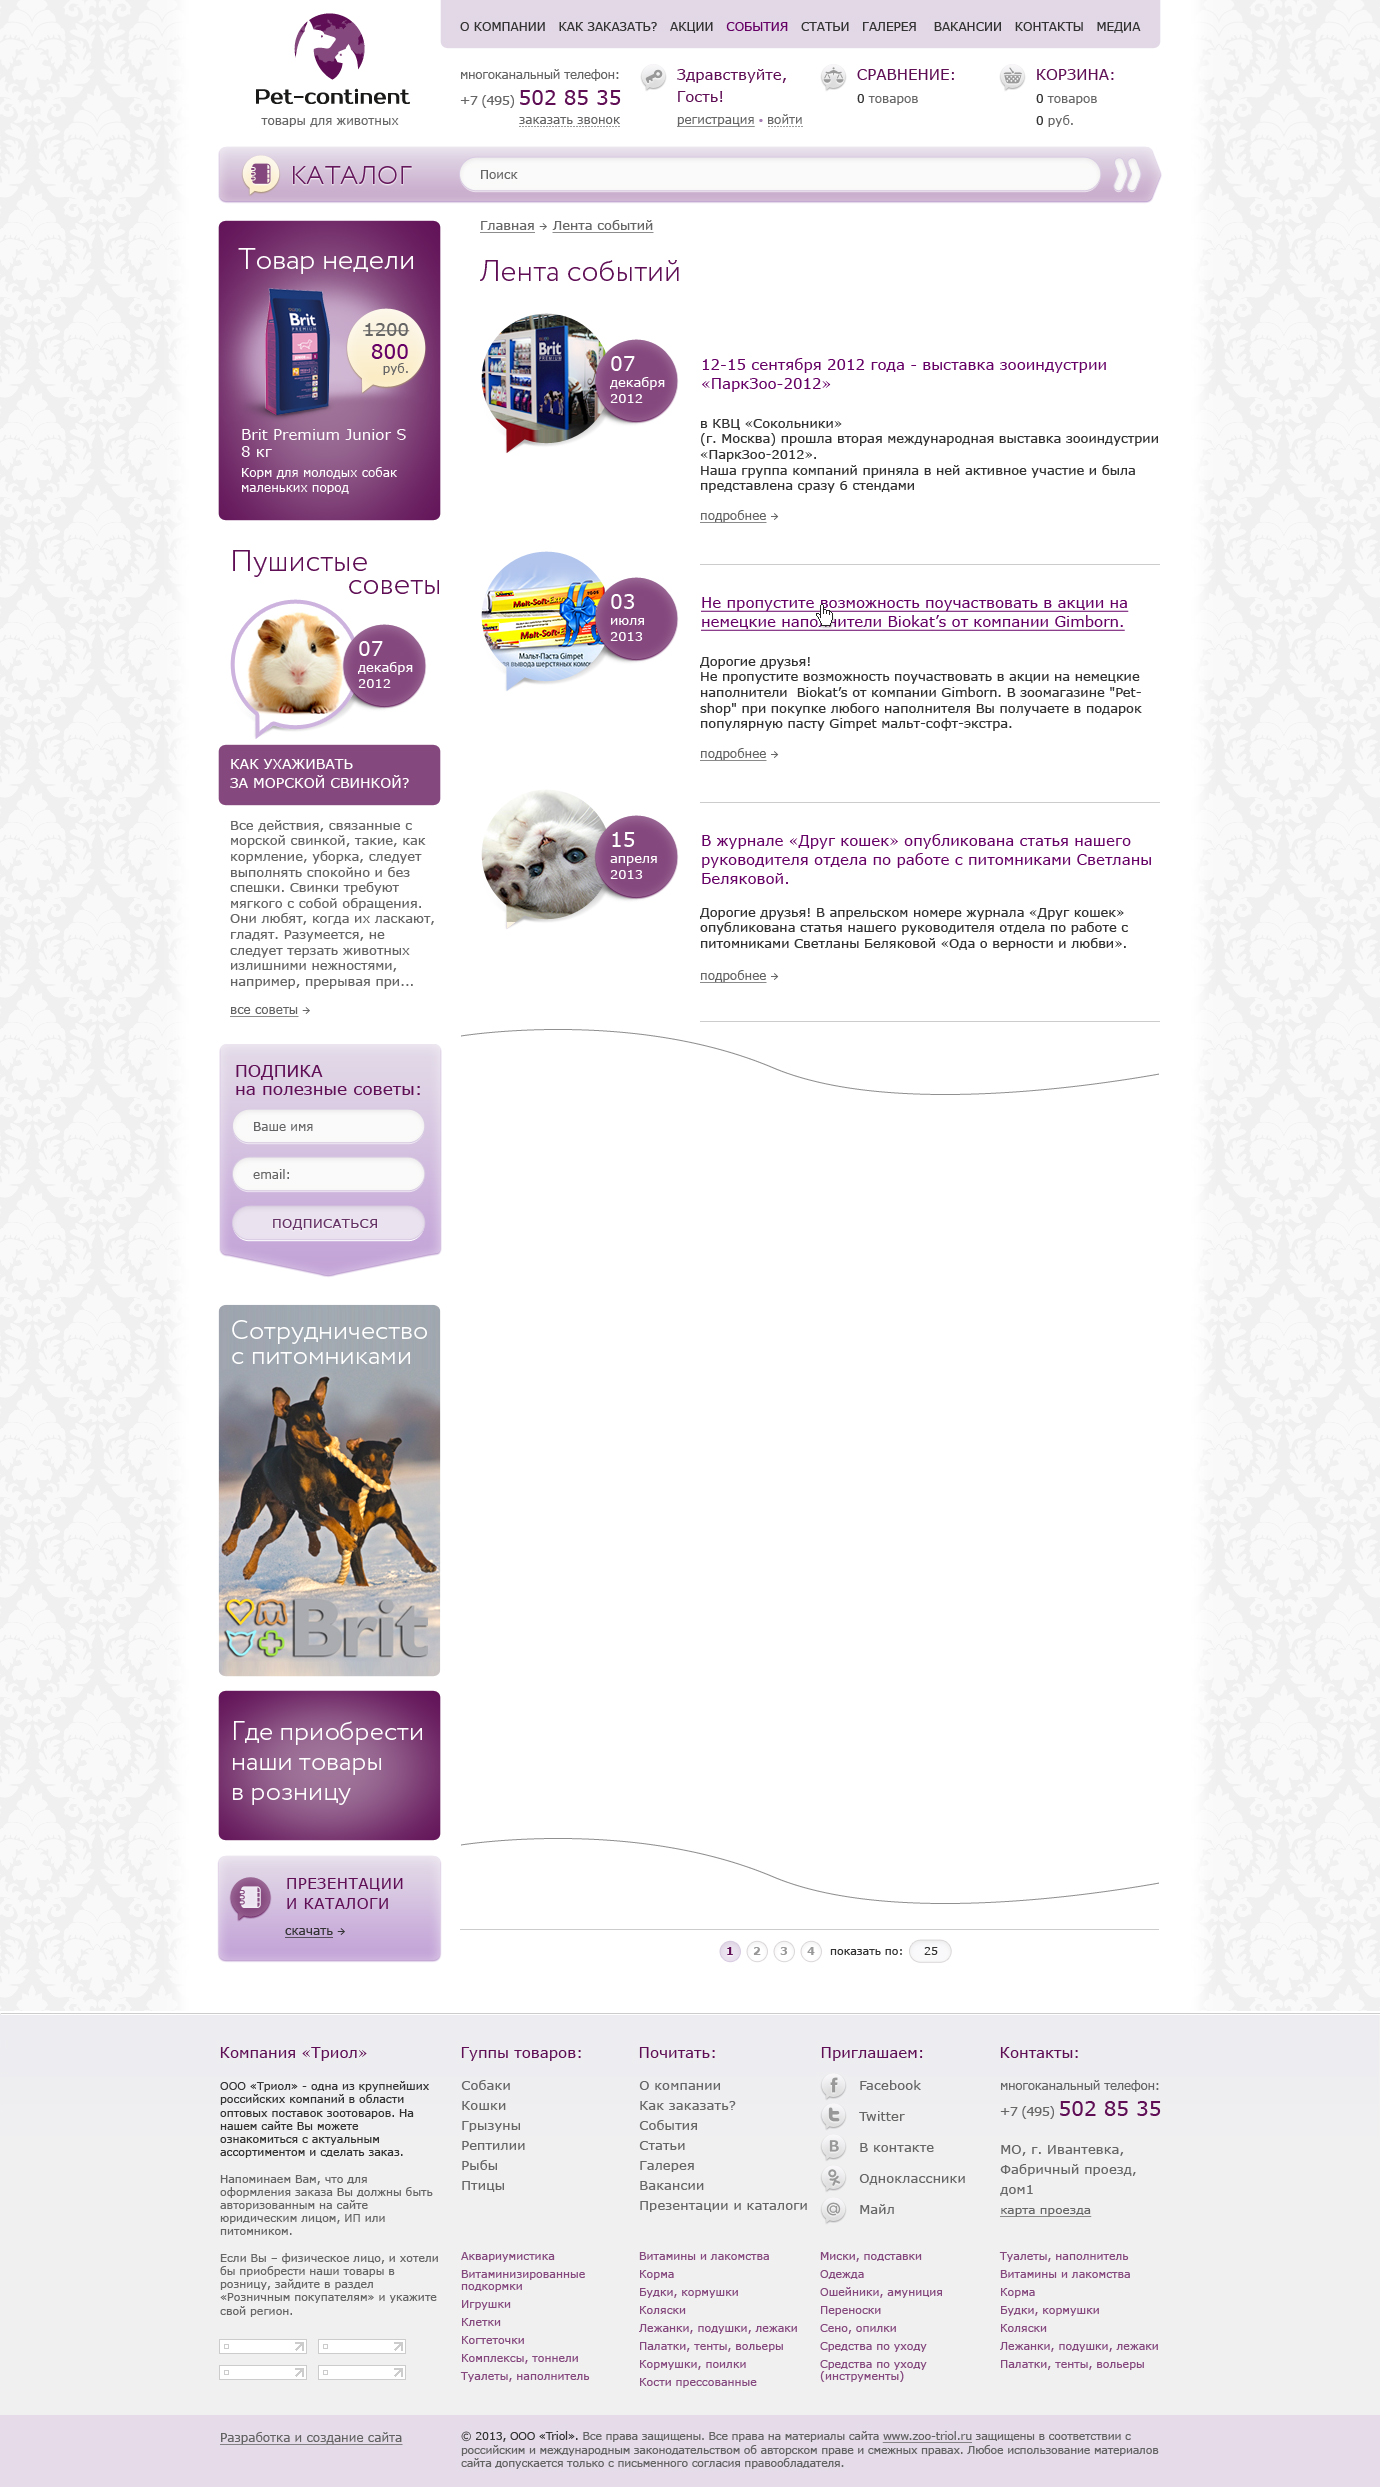 Дизайн интернет-магазина «Pet-continent» магазин товаров для животных - Список публикаций (шаблонный список для новостей, публикаций, акций)